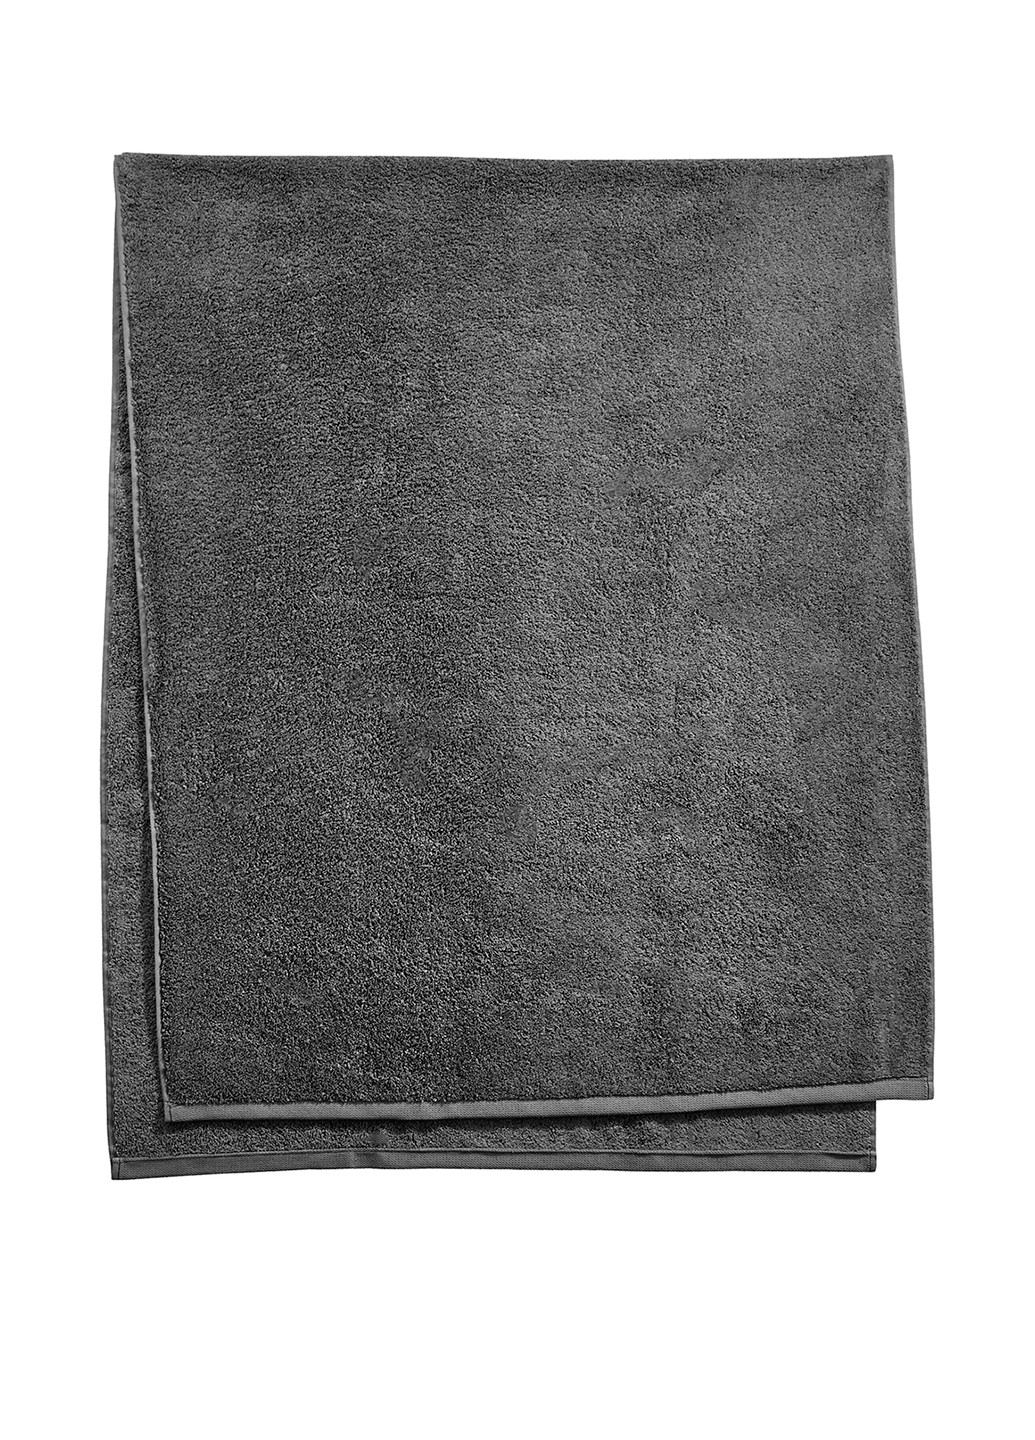 Butlers полотенце, 80х200 см однотонный черный производство - Португалия